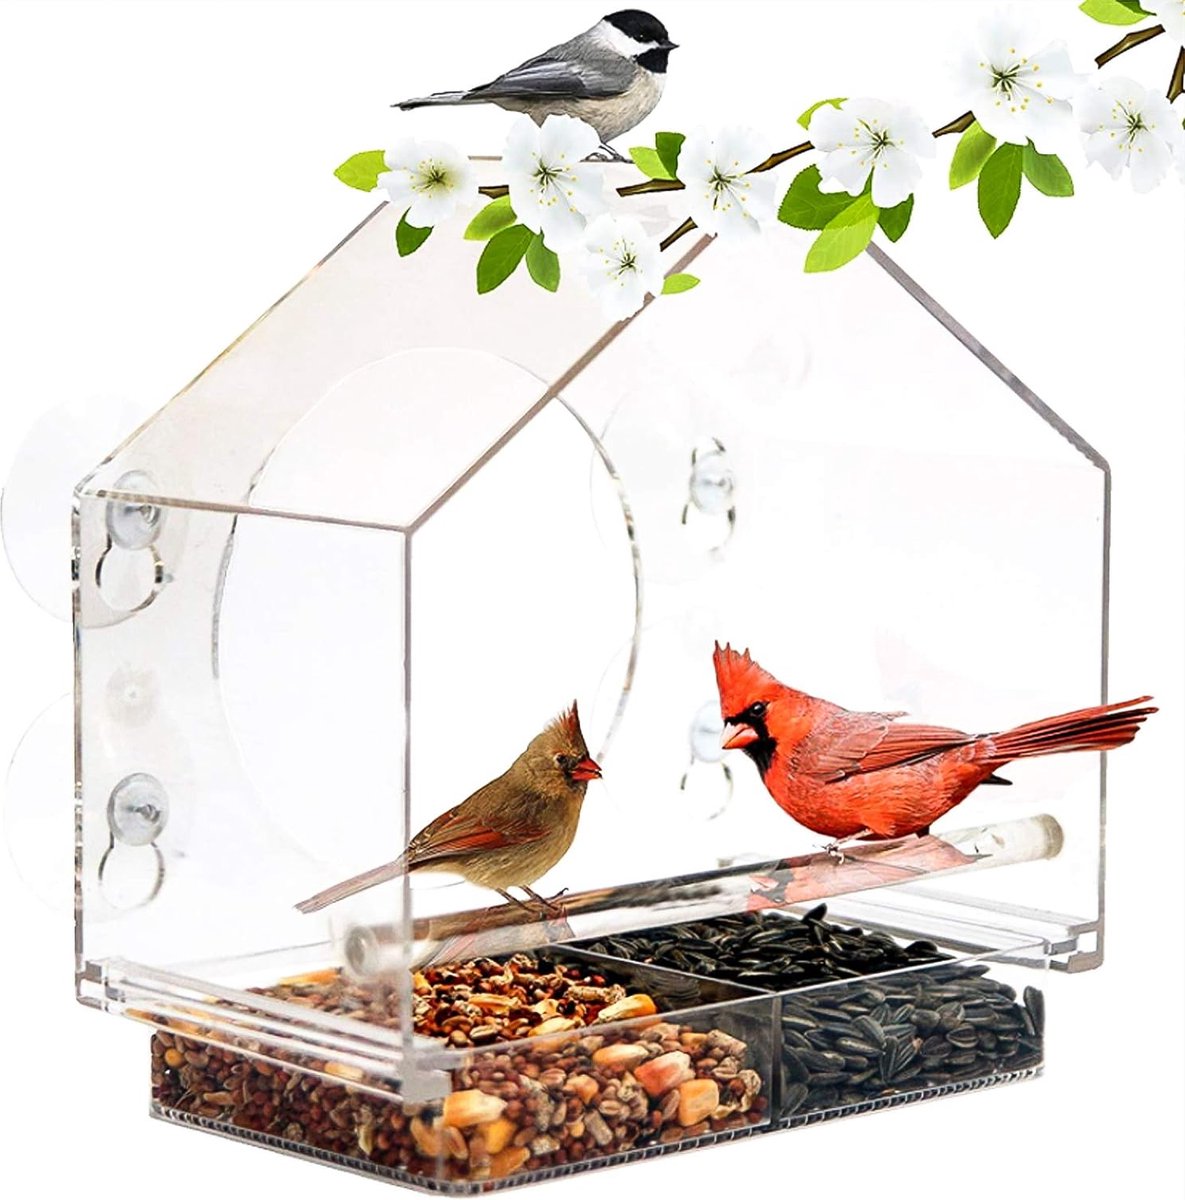 Mangeoire à oiseaux pour fenêtre mangeoire pour oiseaux avec plateau  amovible, trous de drainage et ventouses